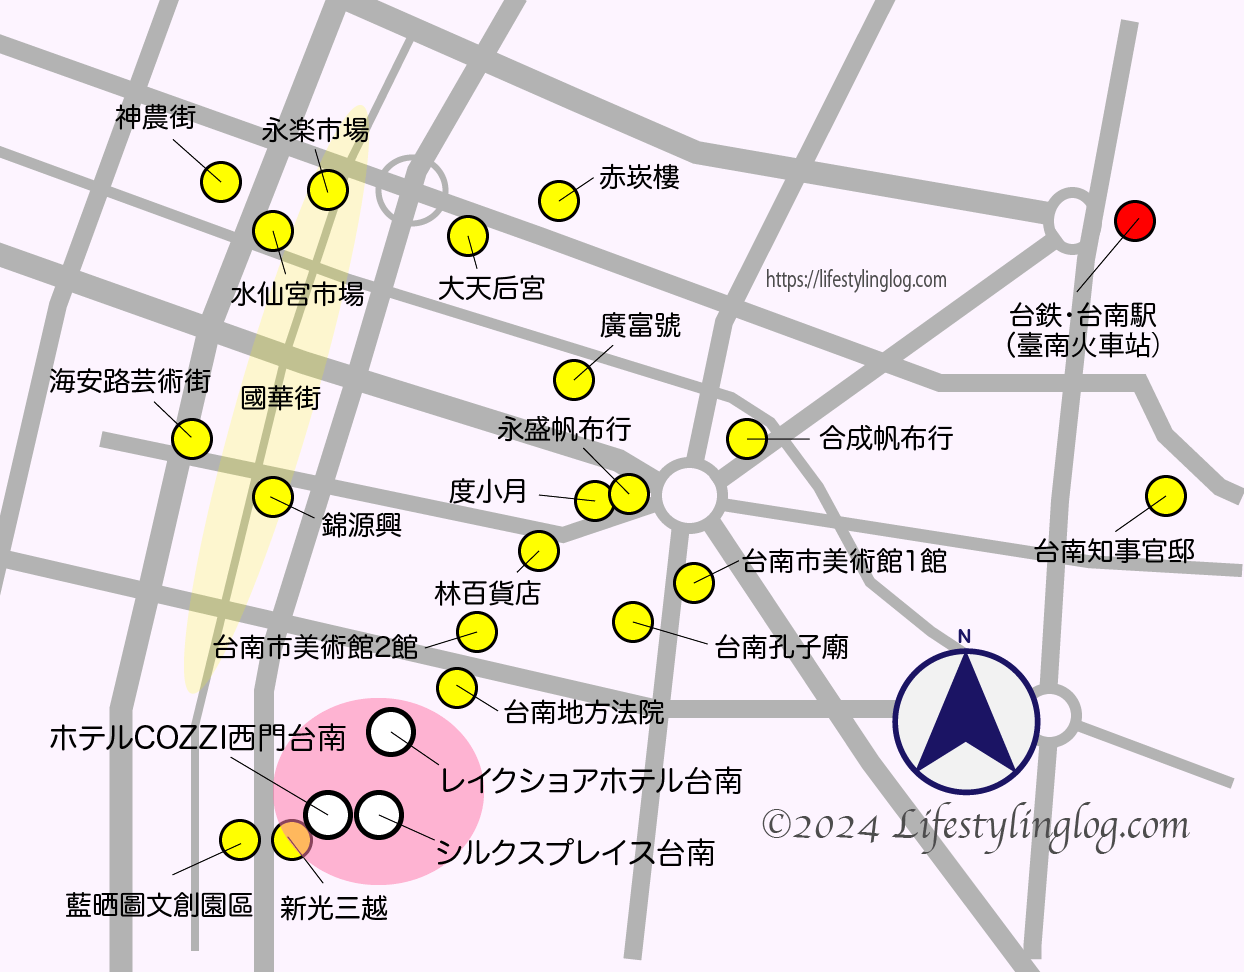 台南の新光三越エリアのホテルの位置を示すイメージマップ